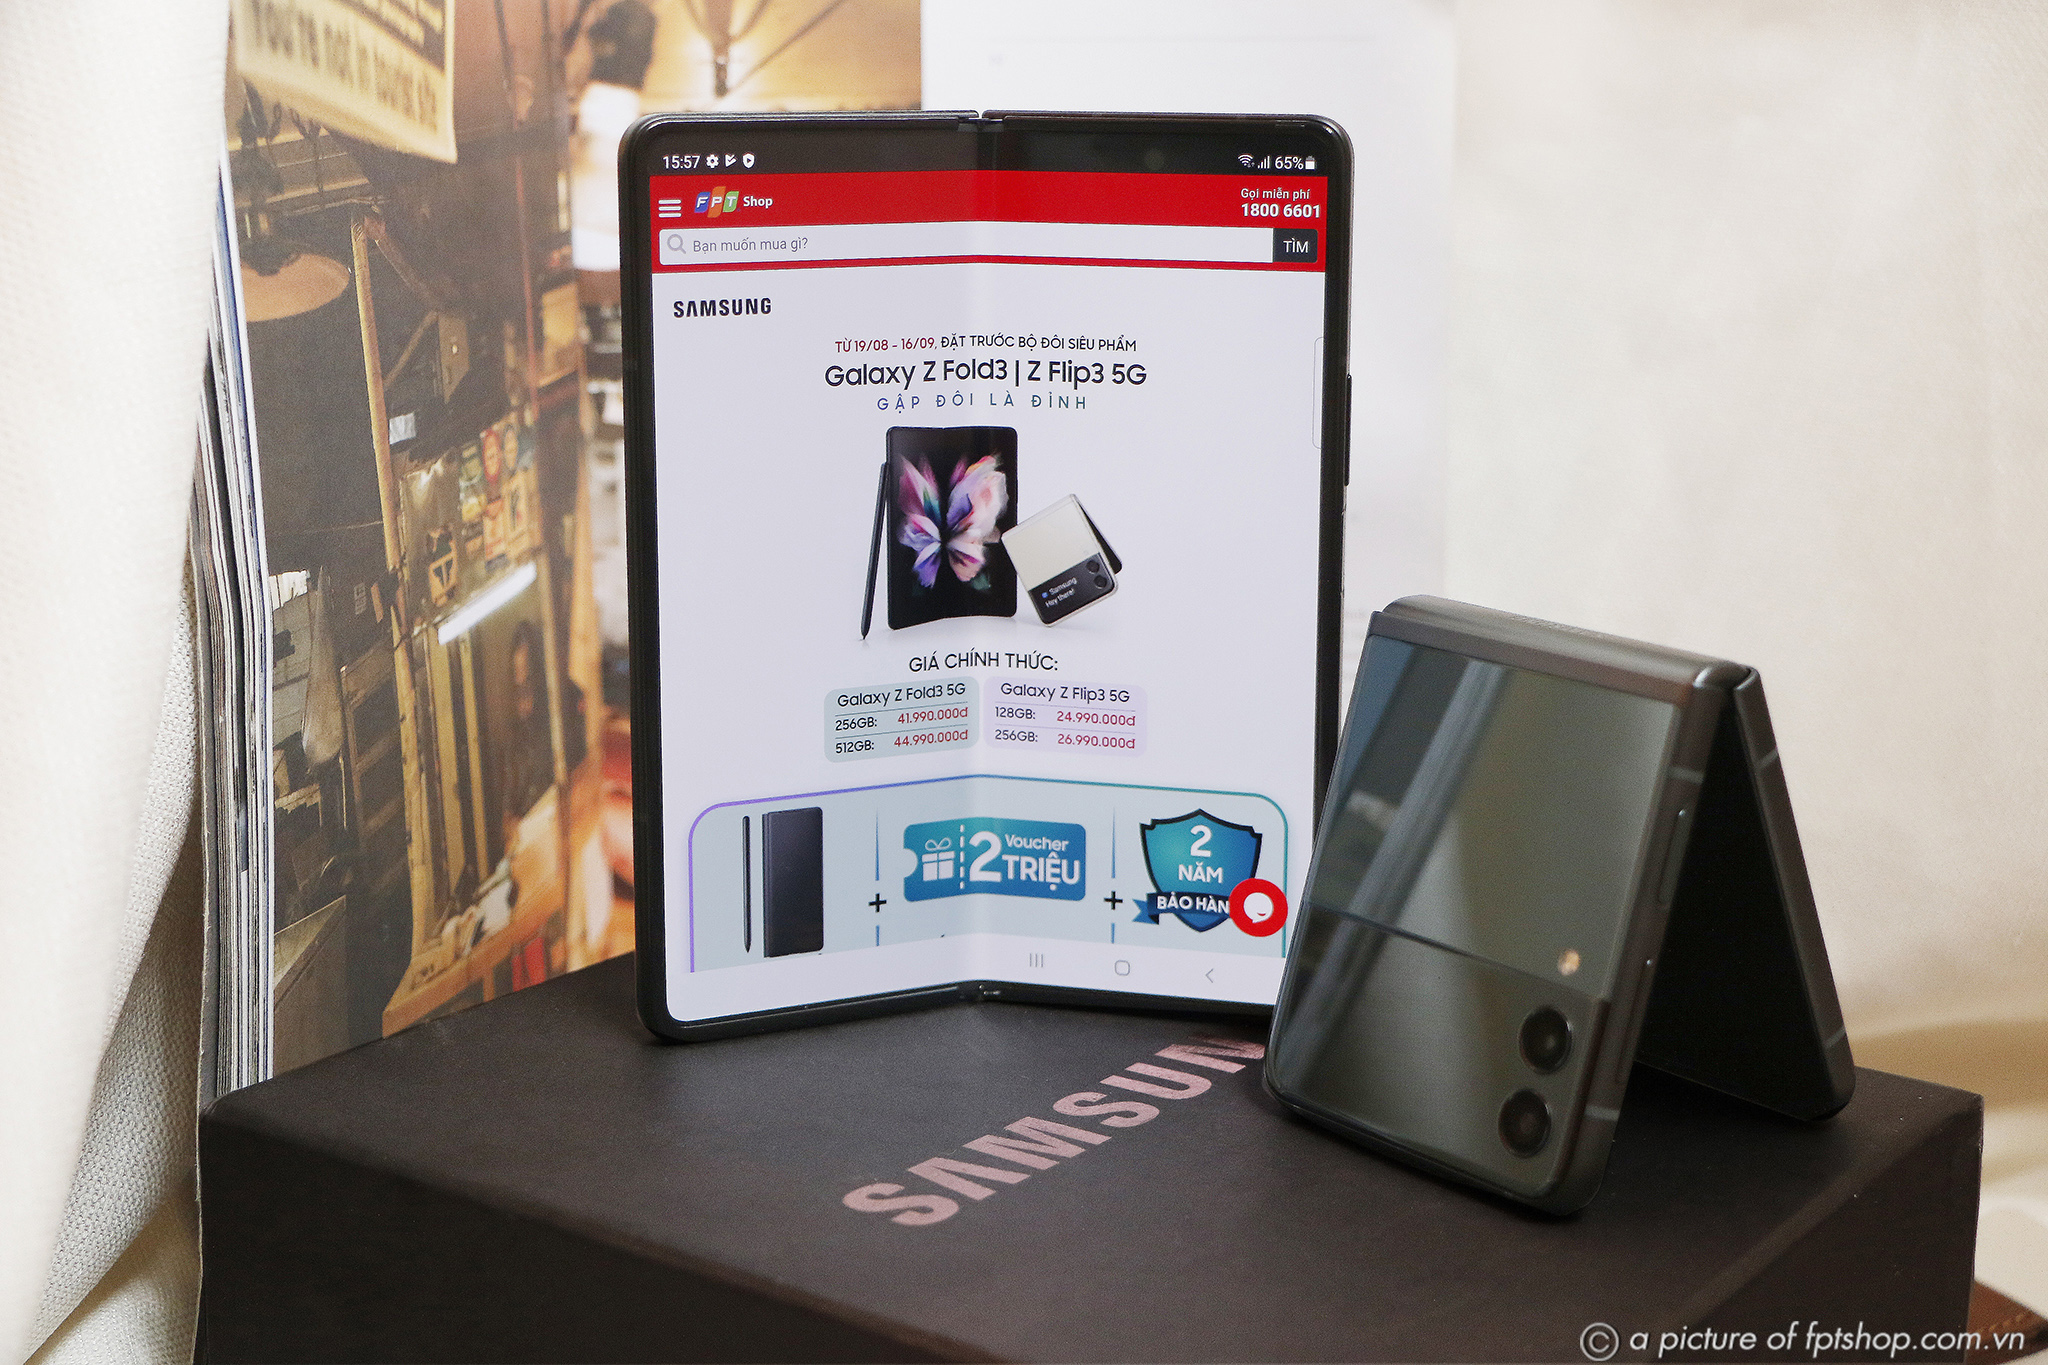 FPT Shop tiếp tục tặng những ưu đãi thiết thực cho khách hàng đặt trước Galaxy Z Fold3 | Flip3 5G